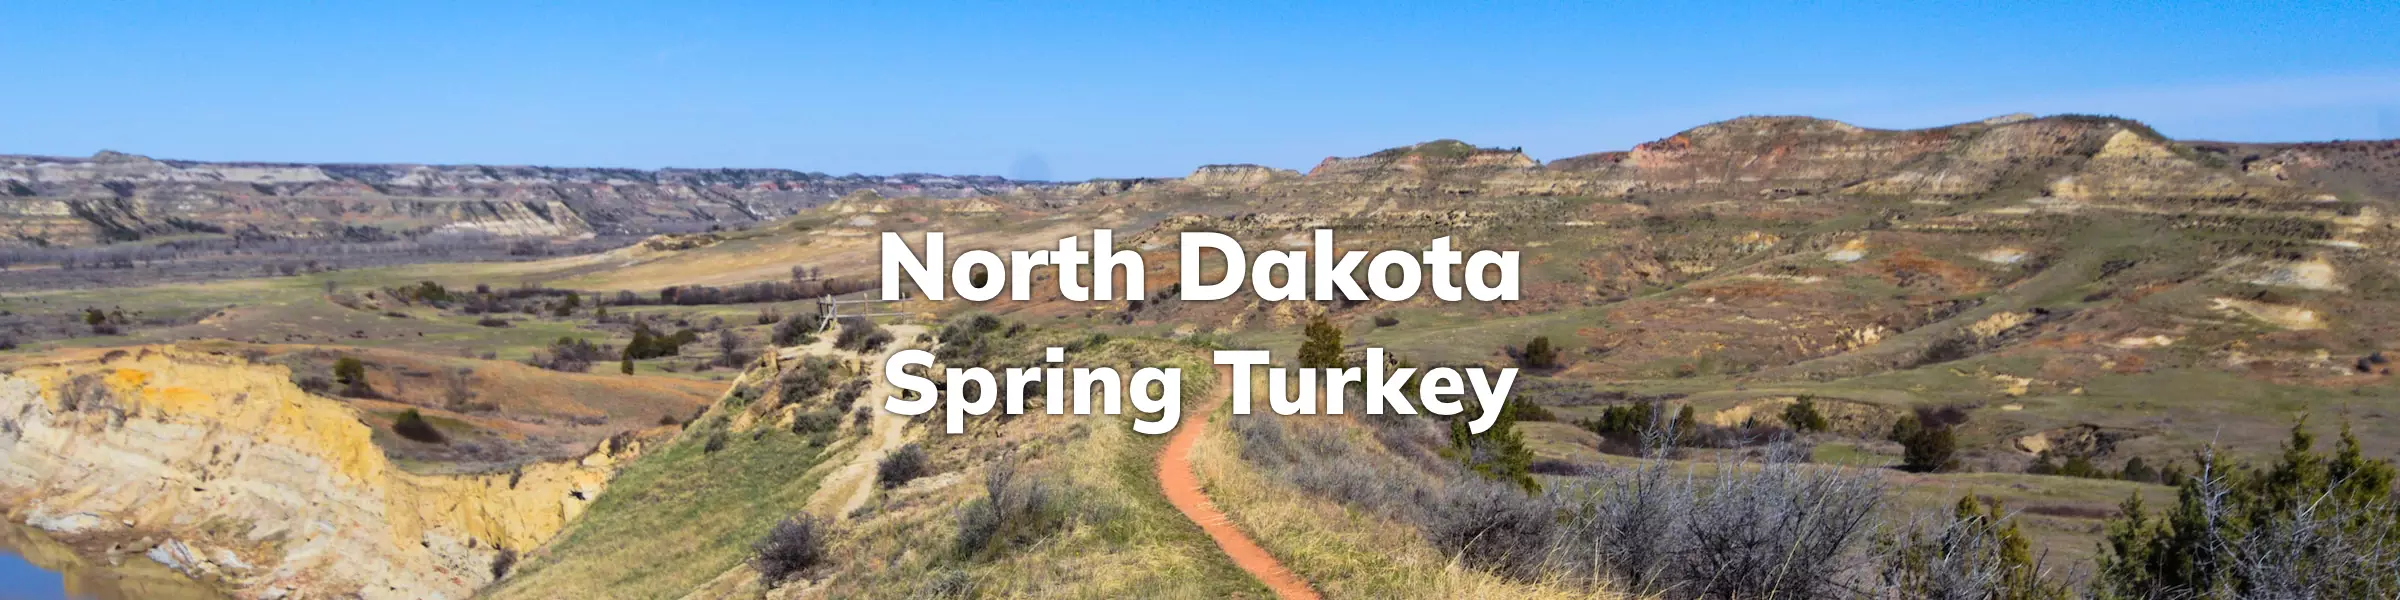 North Dakota Spring Turkey